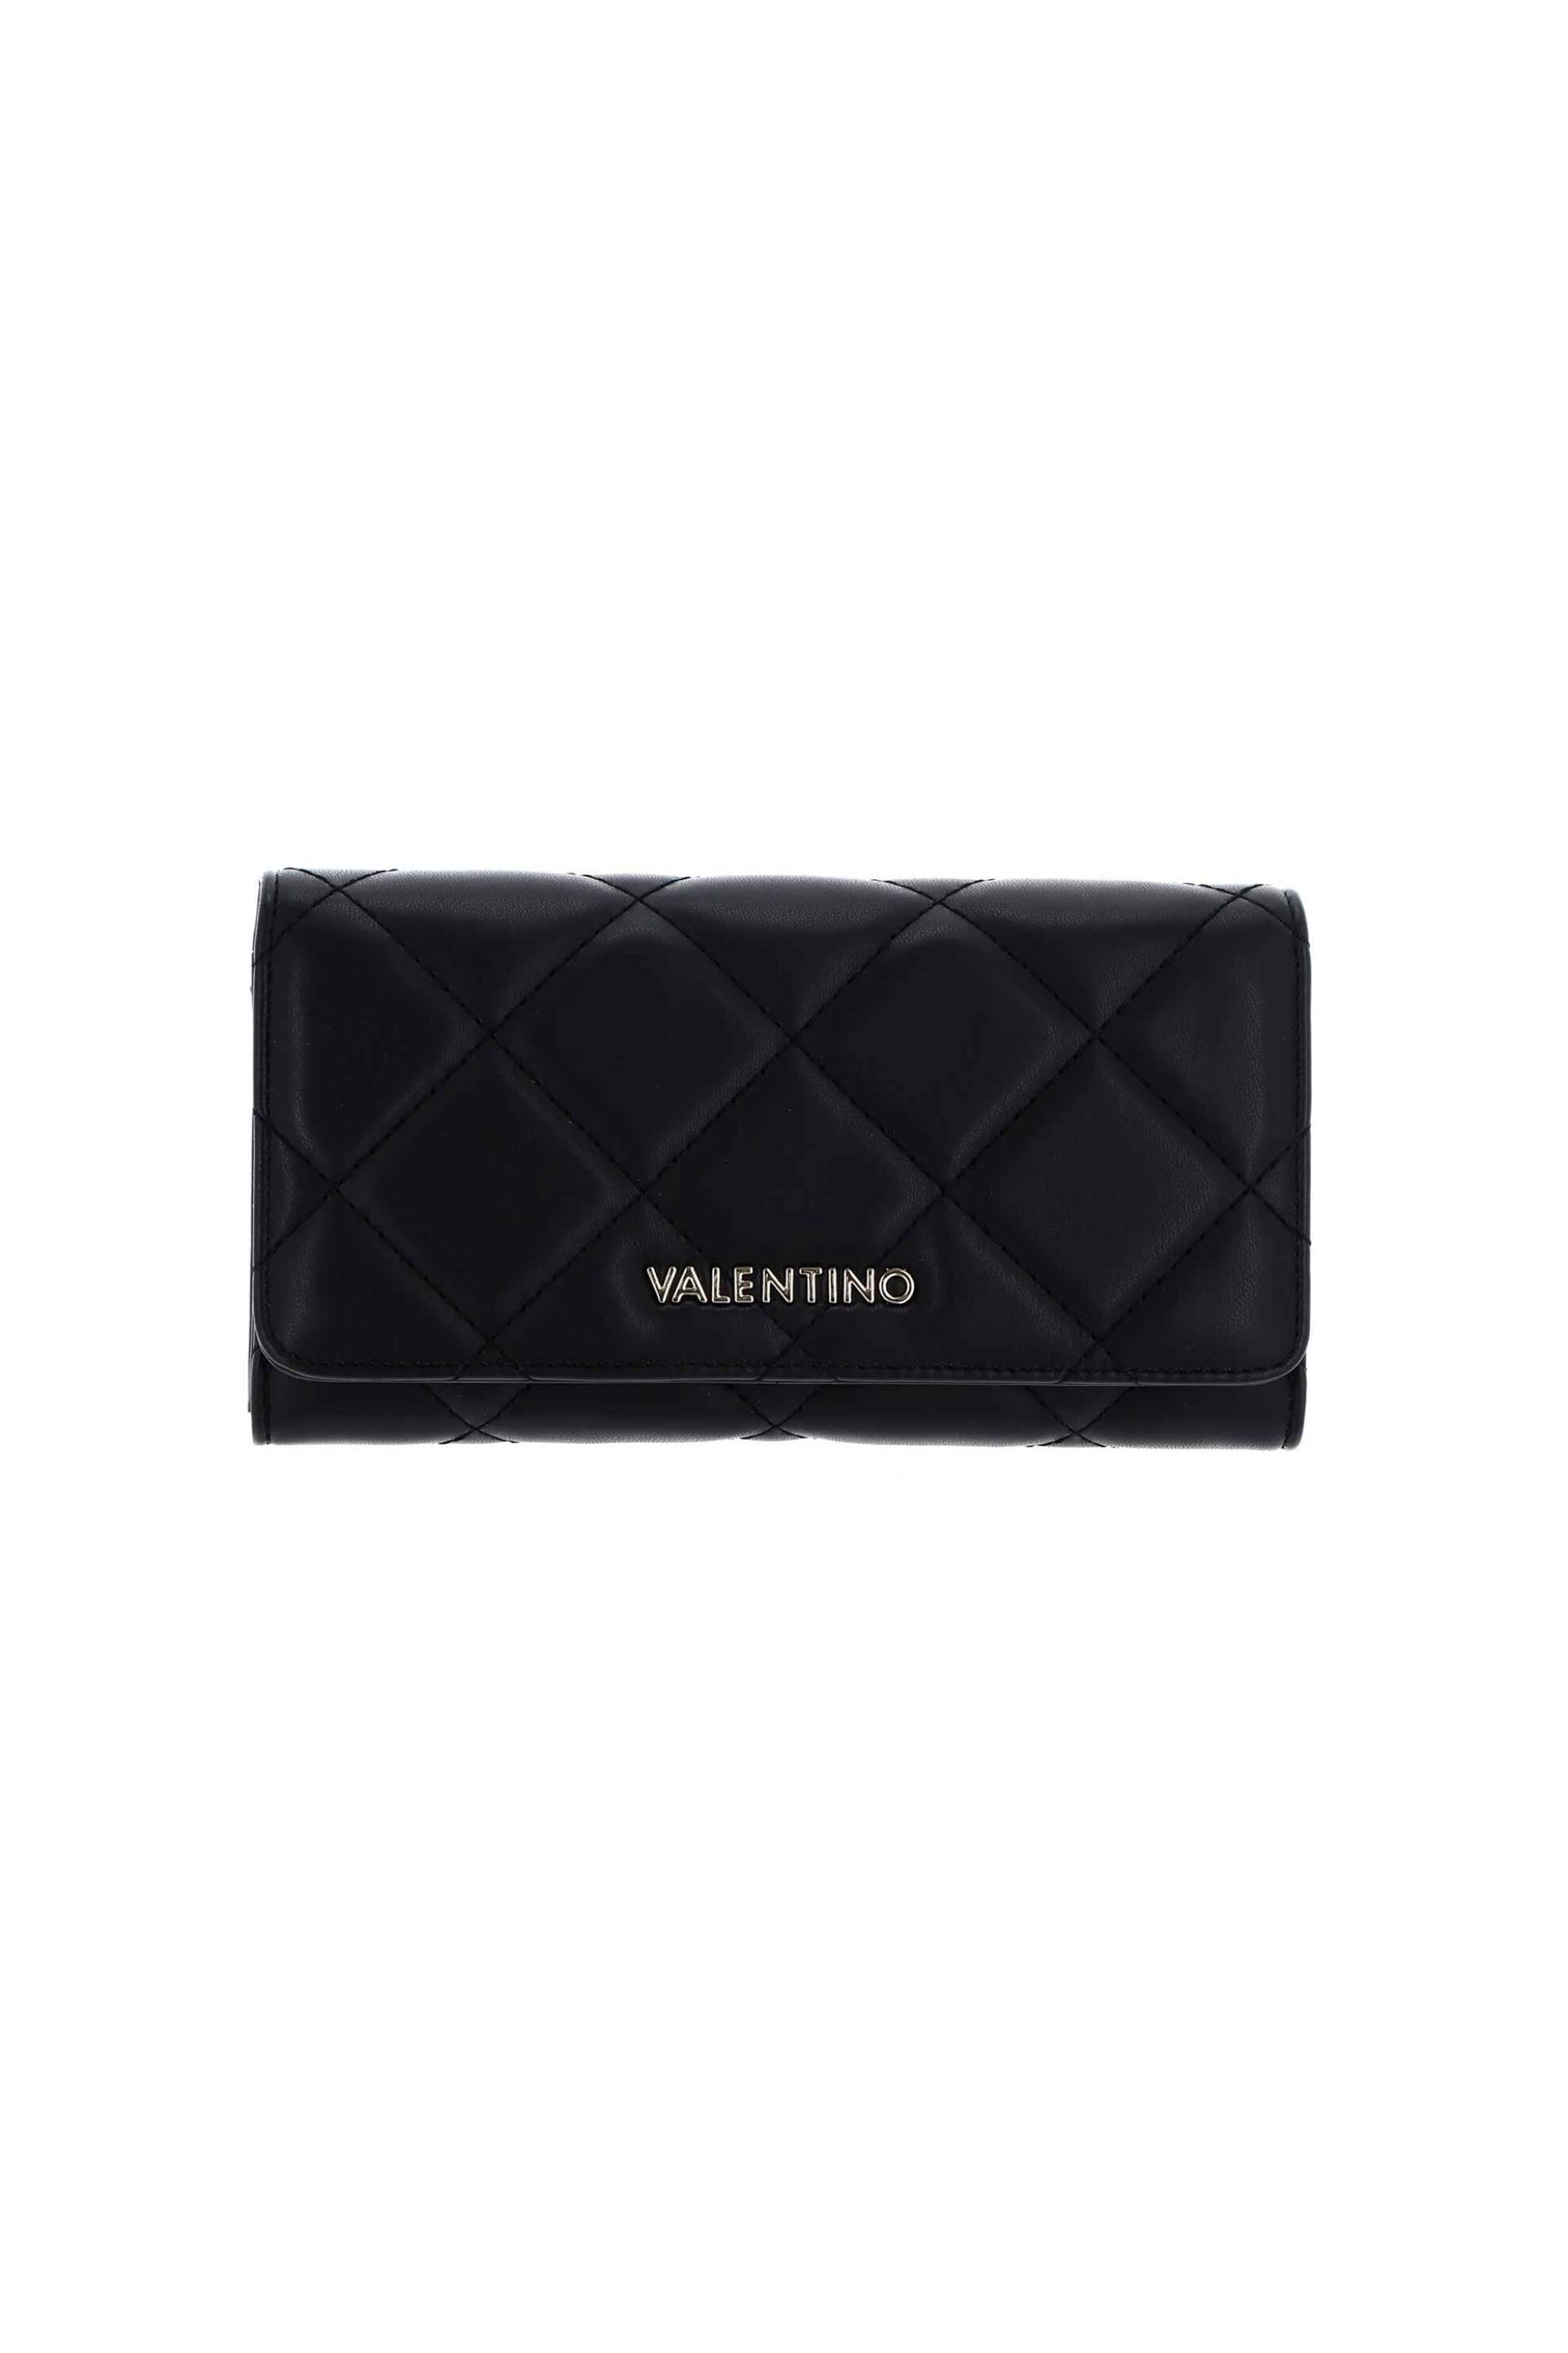 Γυναίκα > ΑΞΕΣΟΥΑΡ > Πορτοφόλια & Θήκες Valentino γυναικείο πορτοφόλι με μεταλλικό λογότυπο μονόχρωμο "Ocarina" - 55KVPS3KK113R/O Μαύρο